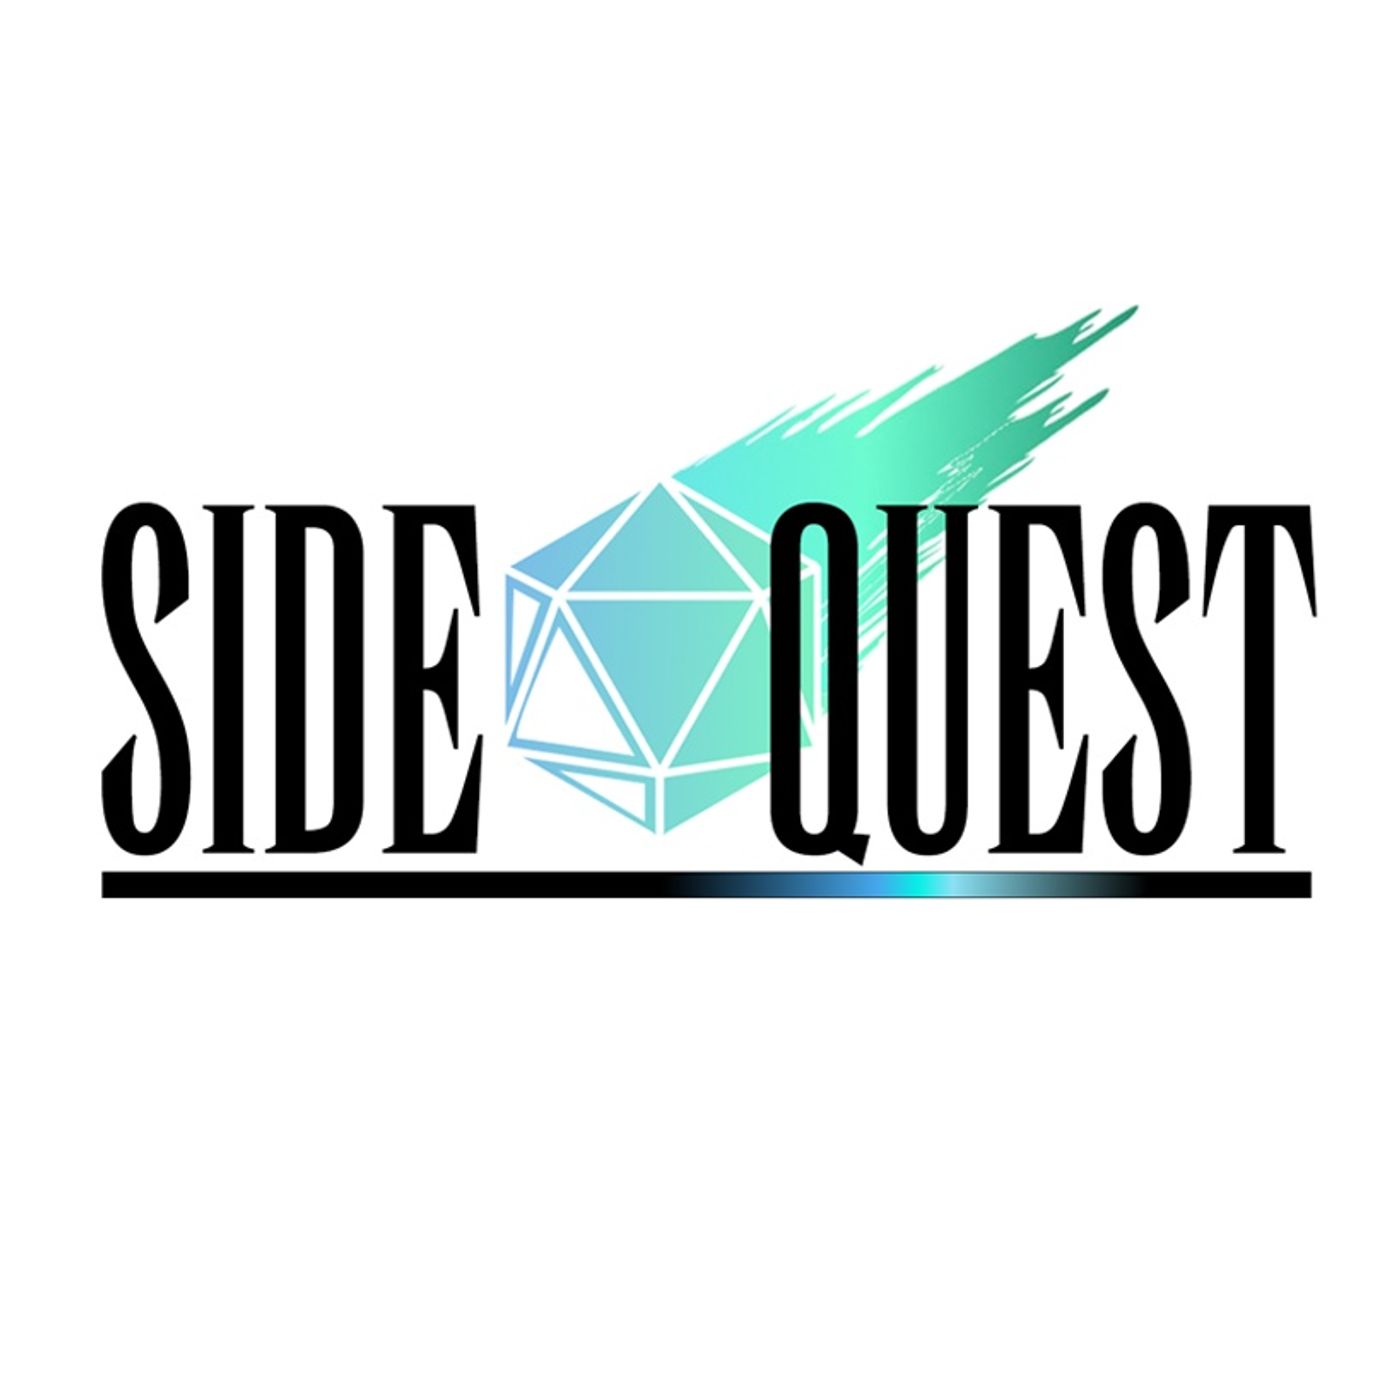 Side Quest 123: A Trivia Matter